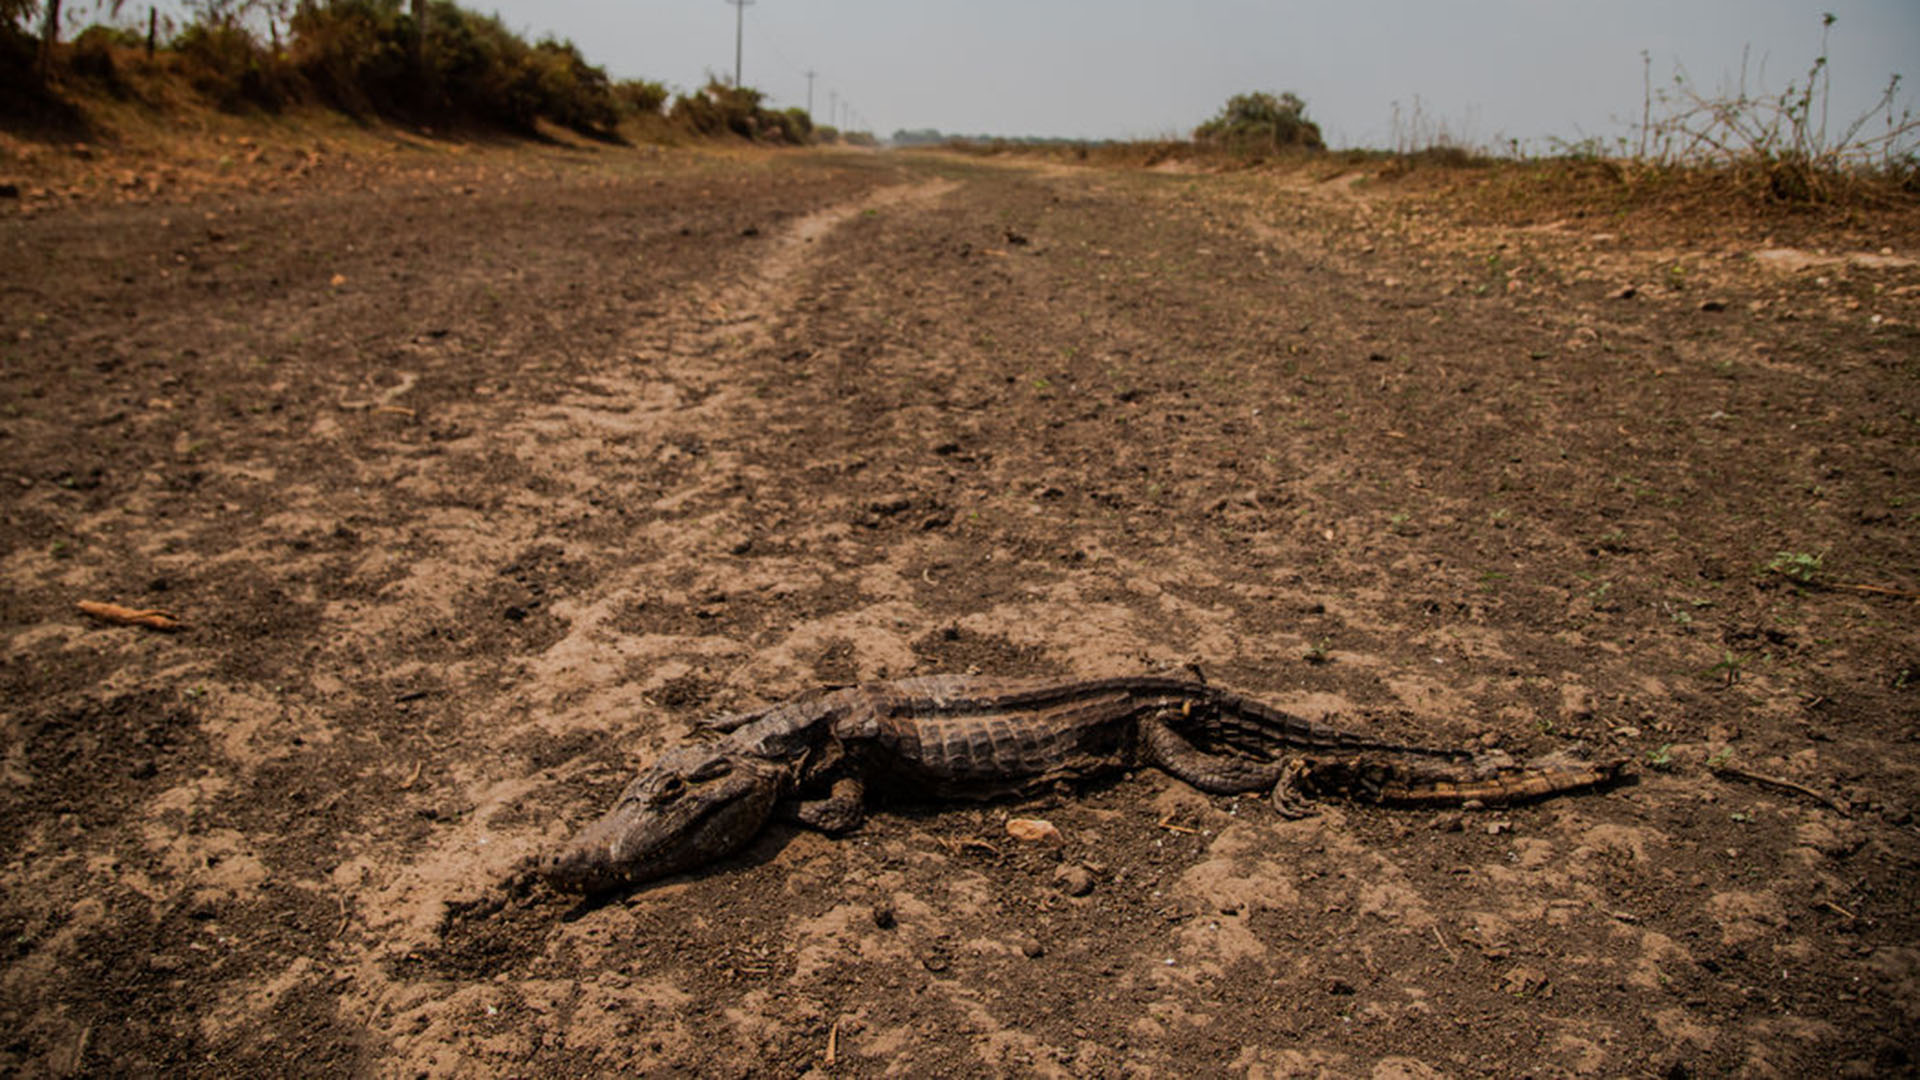 Un caimán muerto en una zona pantanosa seca que se quemó en los incendios, en el estado de Mato Grosso, Brasil (Maria Magdalena Arrellaga/The New York Times)